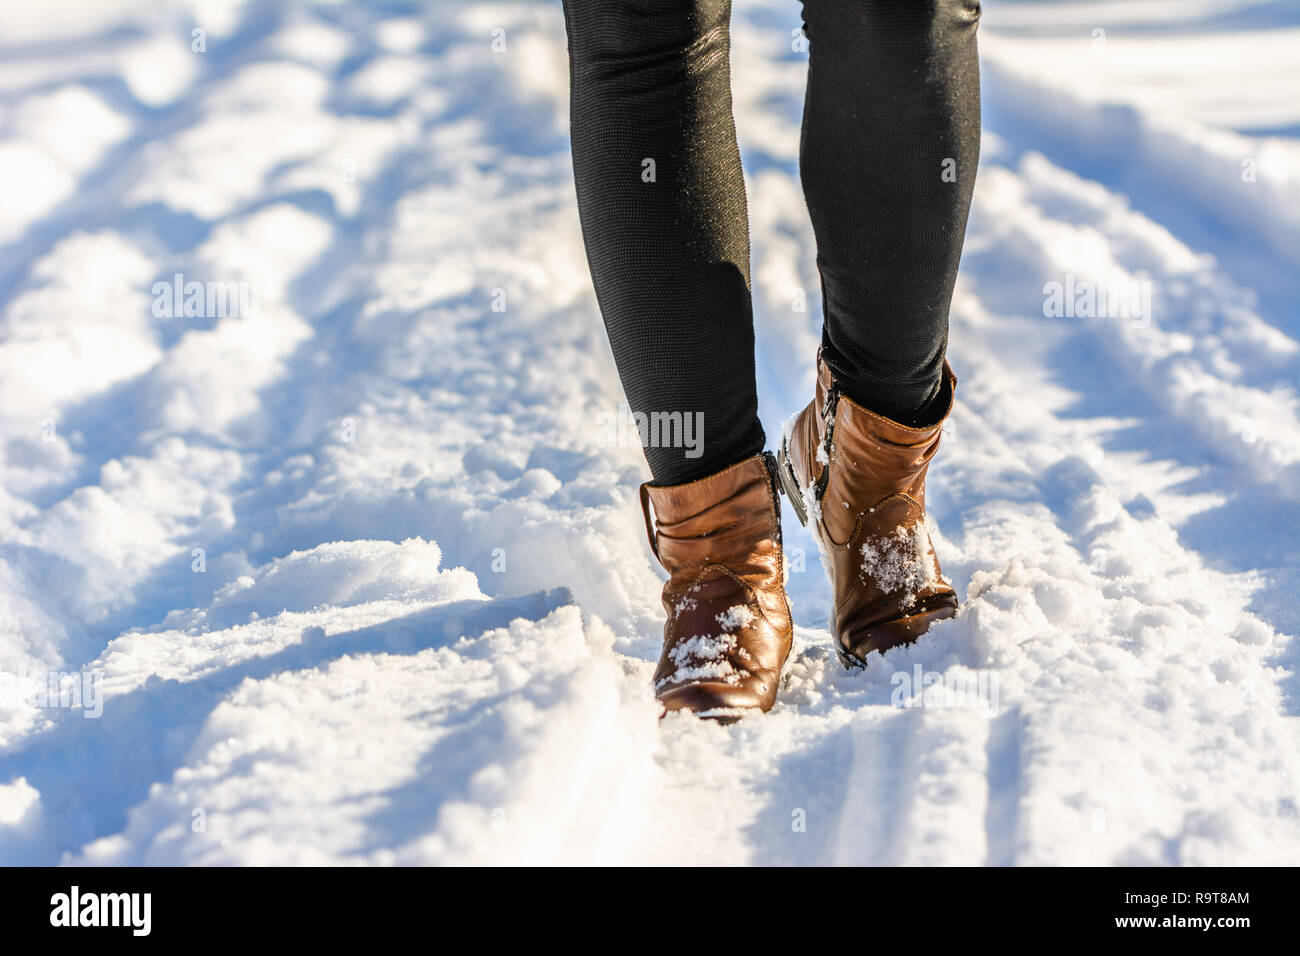 Frau Wandern im Schnee Stiefel, winter Schuhe der Frauen auf die Füße und  Beine in Leggings angezogen Stockfotografie - Alamy